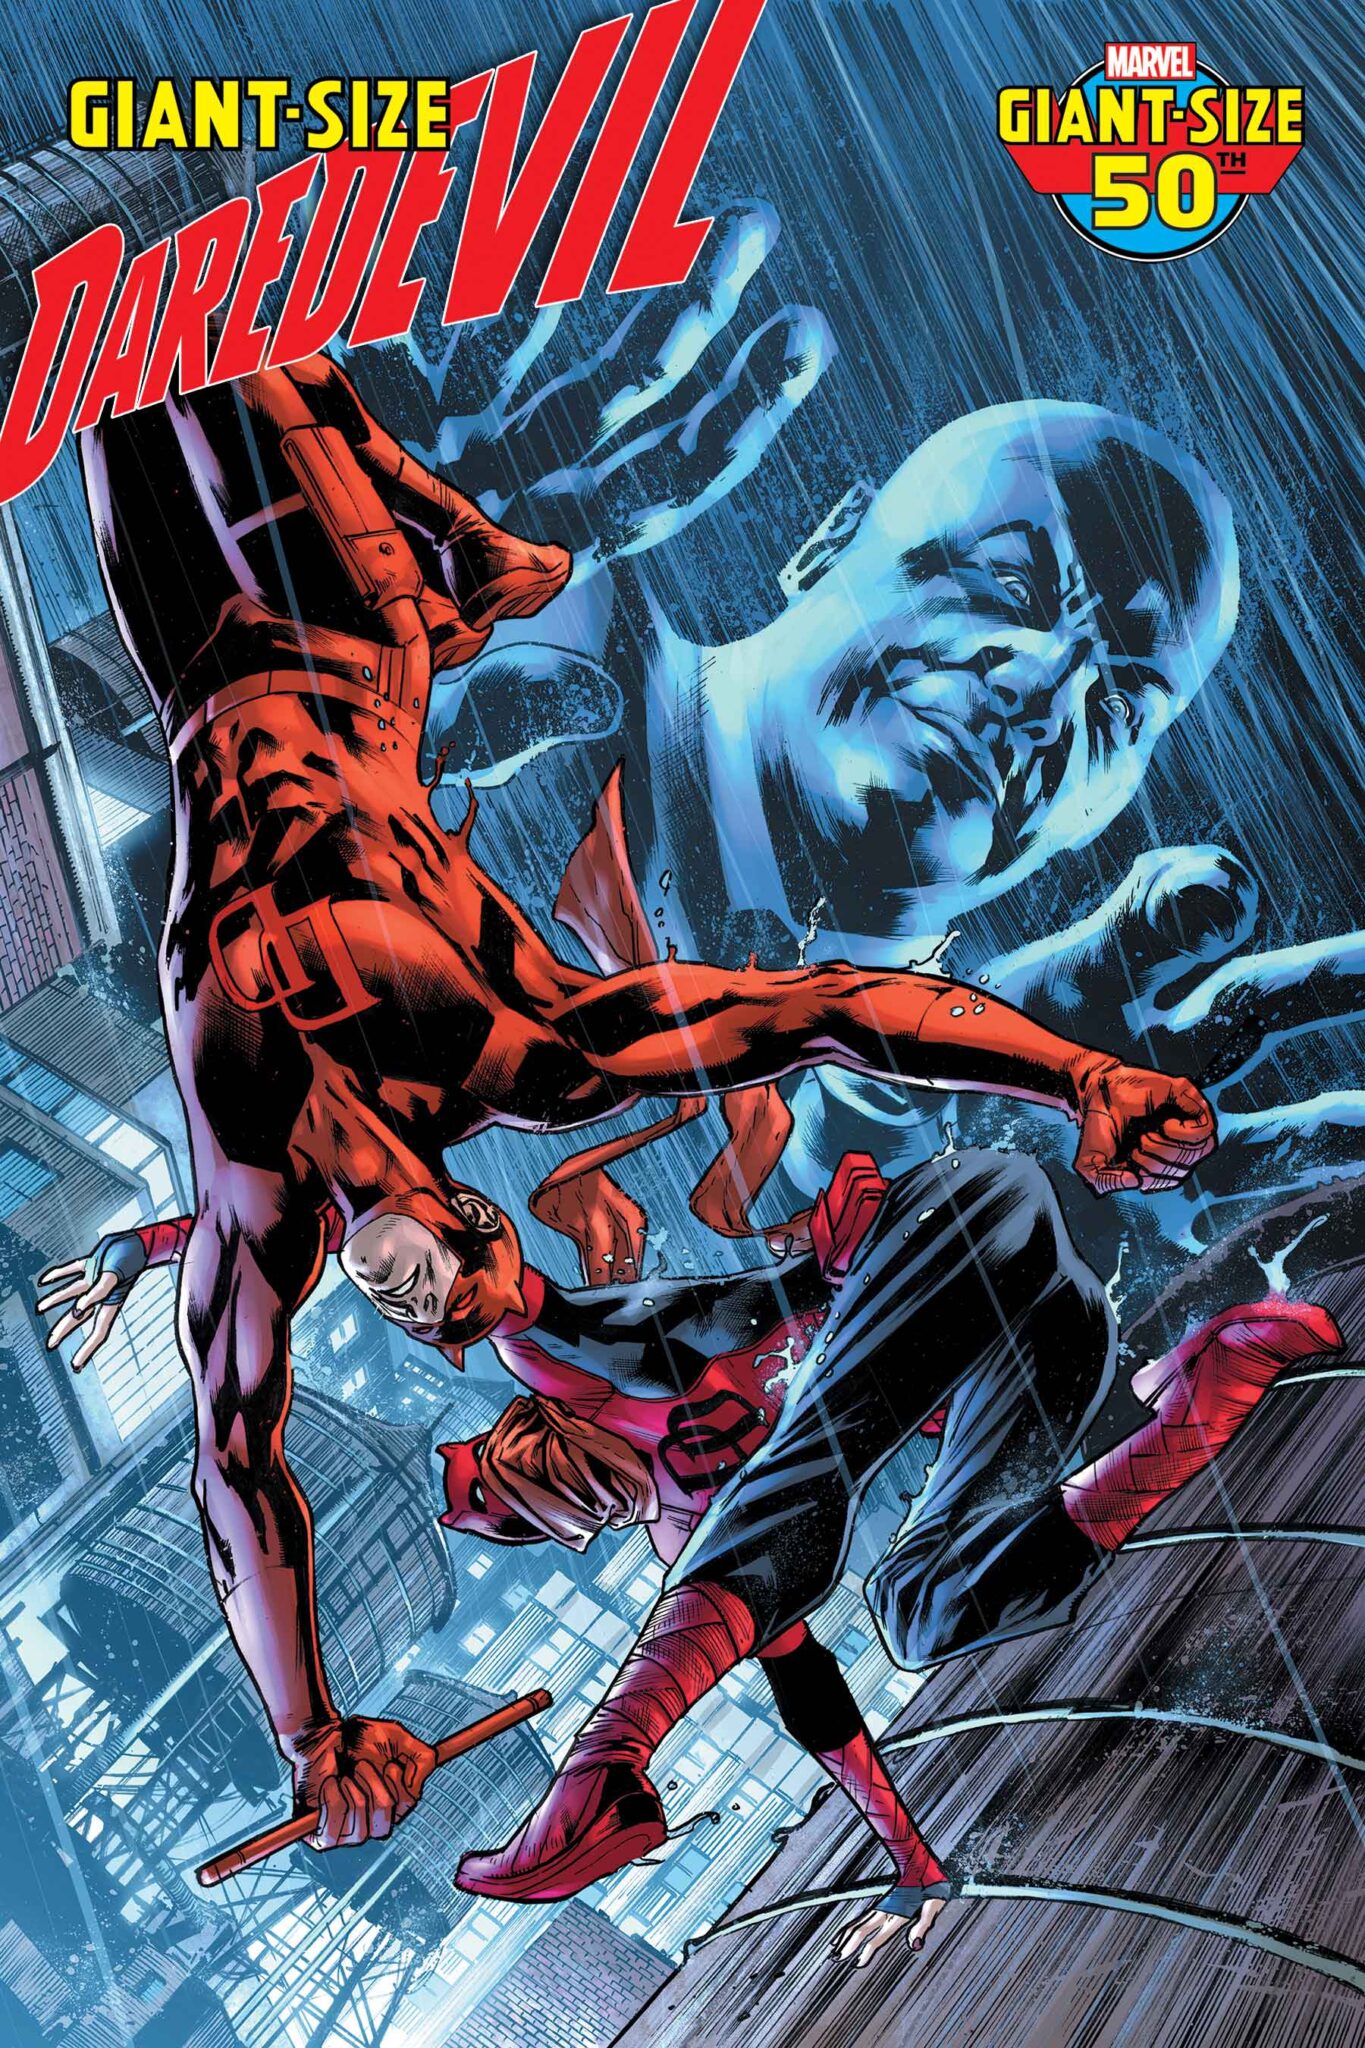 Giant-Size Daredevil #1 cover